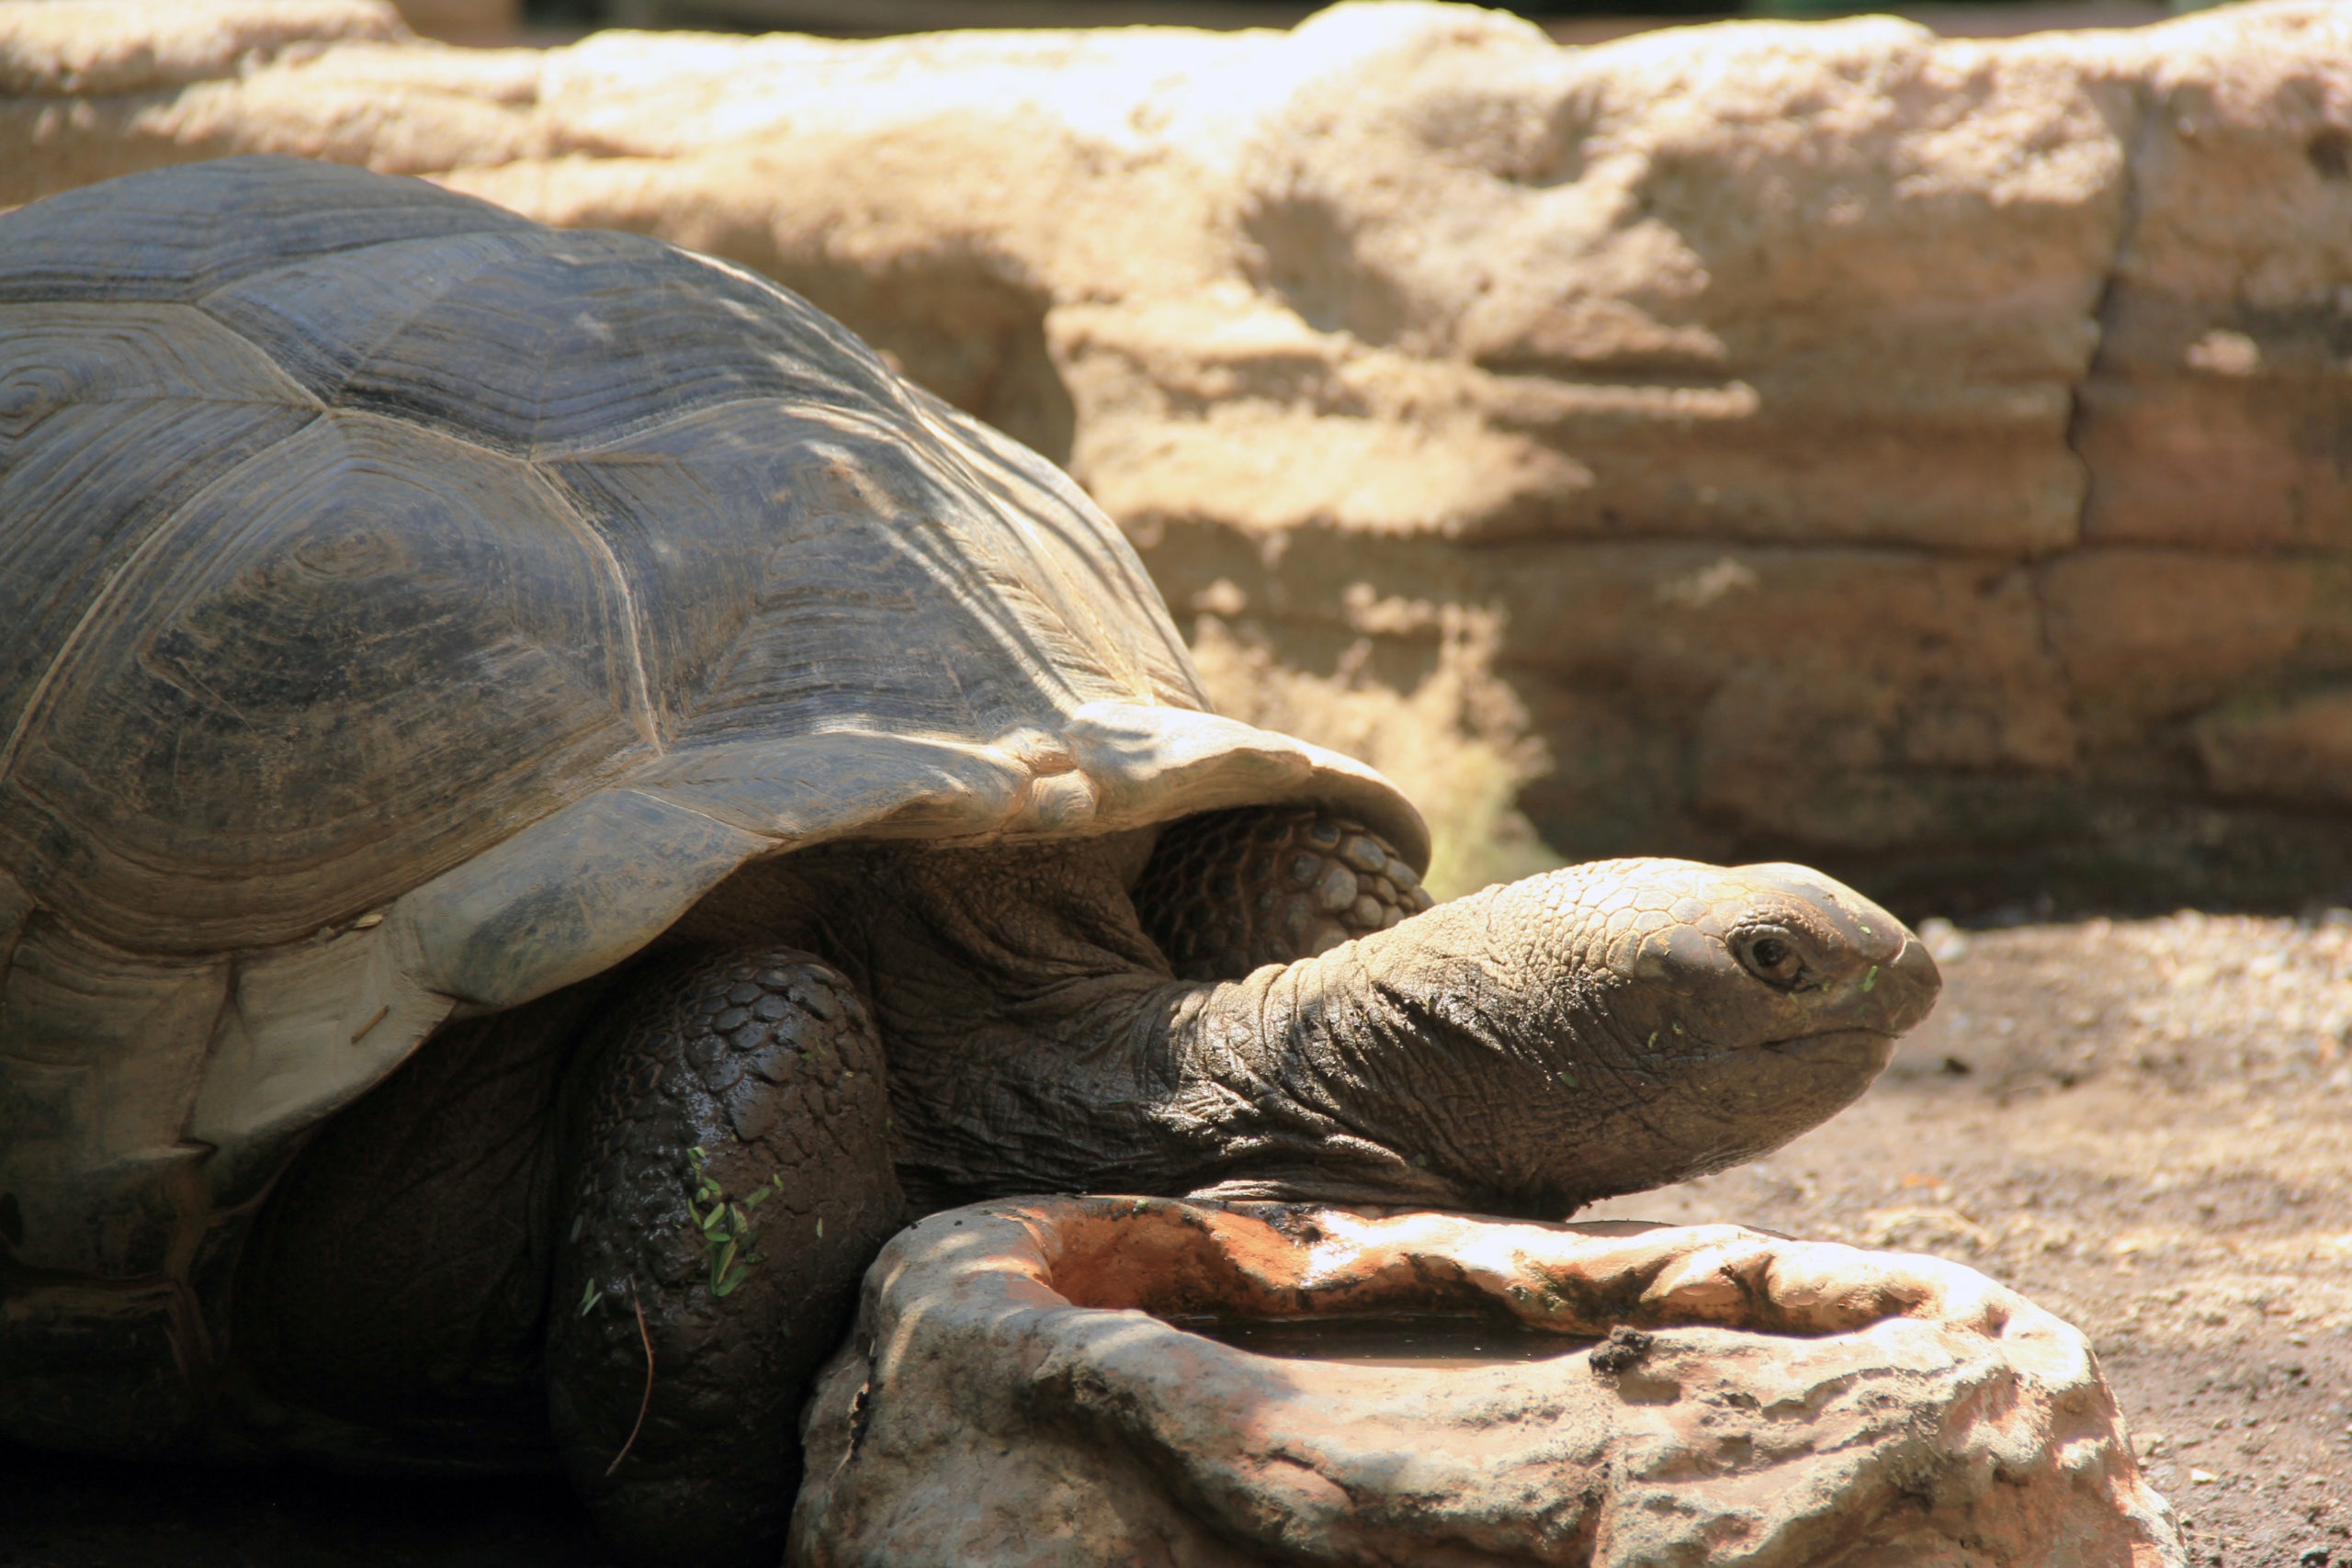 aldabra-giant-tortoise